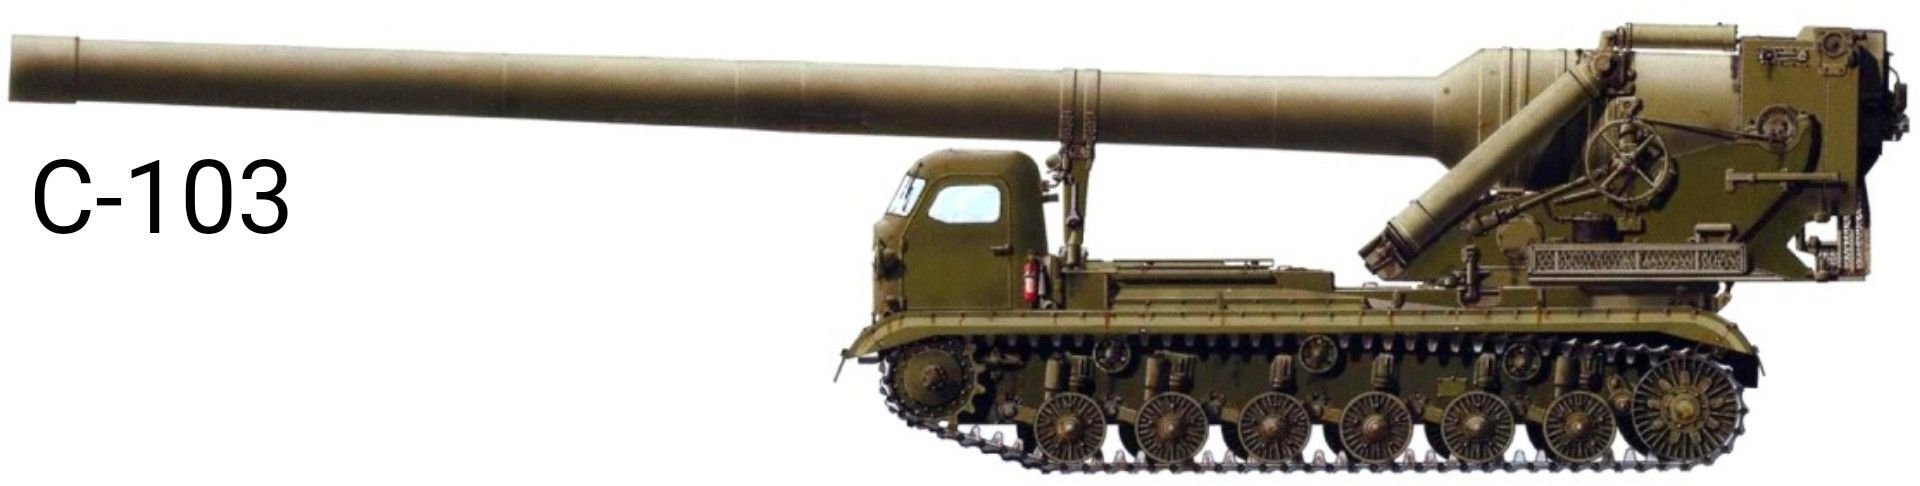 Б 1 155. 420-Мм безоткатное орудие с-103. 420 Мм САУ С-103. Ядерная артиллерия САУ С-103 420-мм. САУ Ока 420 мм.